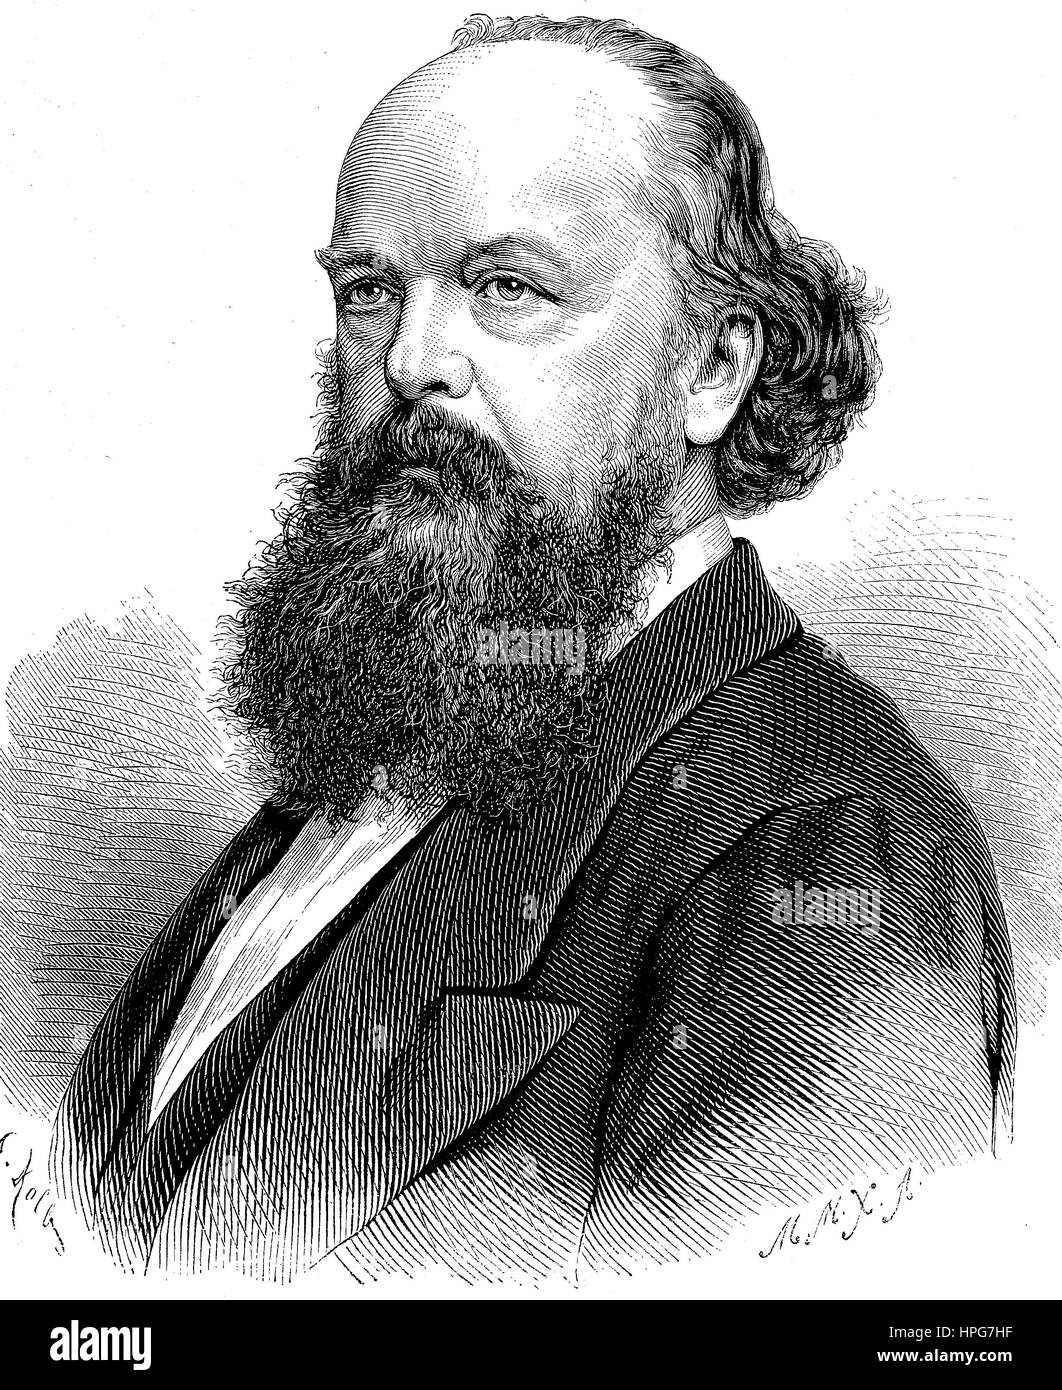 Karl Cauer, 1828 - 1885, sculpteur allemand, Karl Cauer, 1828 - 1885, Deutscher Bildhauer numérique, l'amélioration de la reproduction d'une gravure sur bois à partir de l'année 1885 Banque D'Images